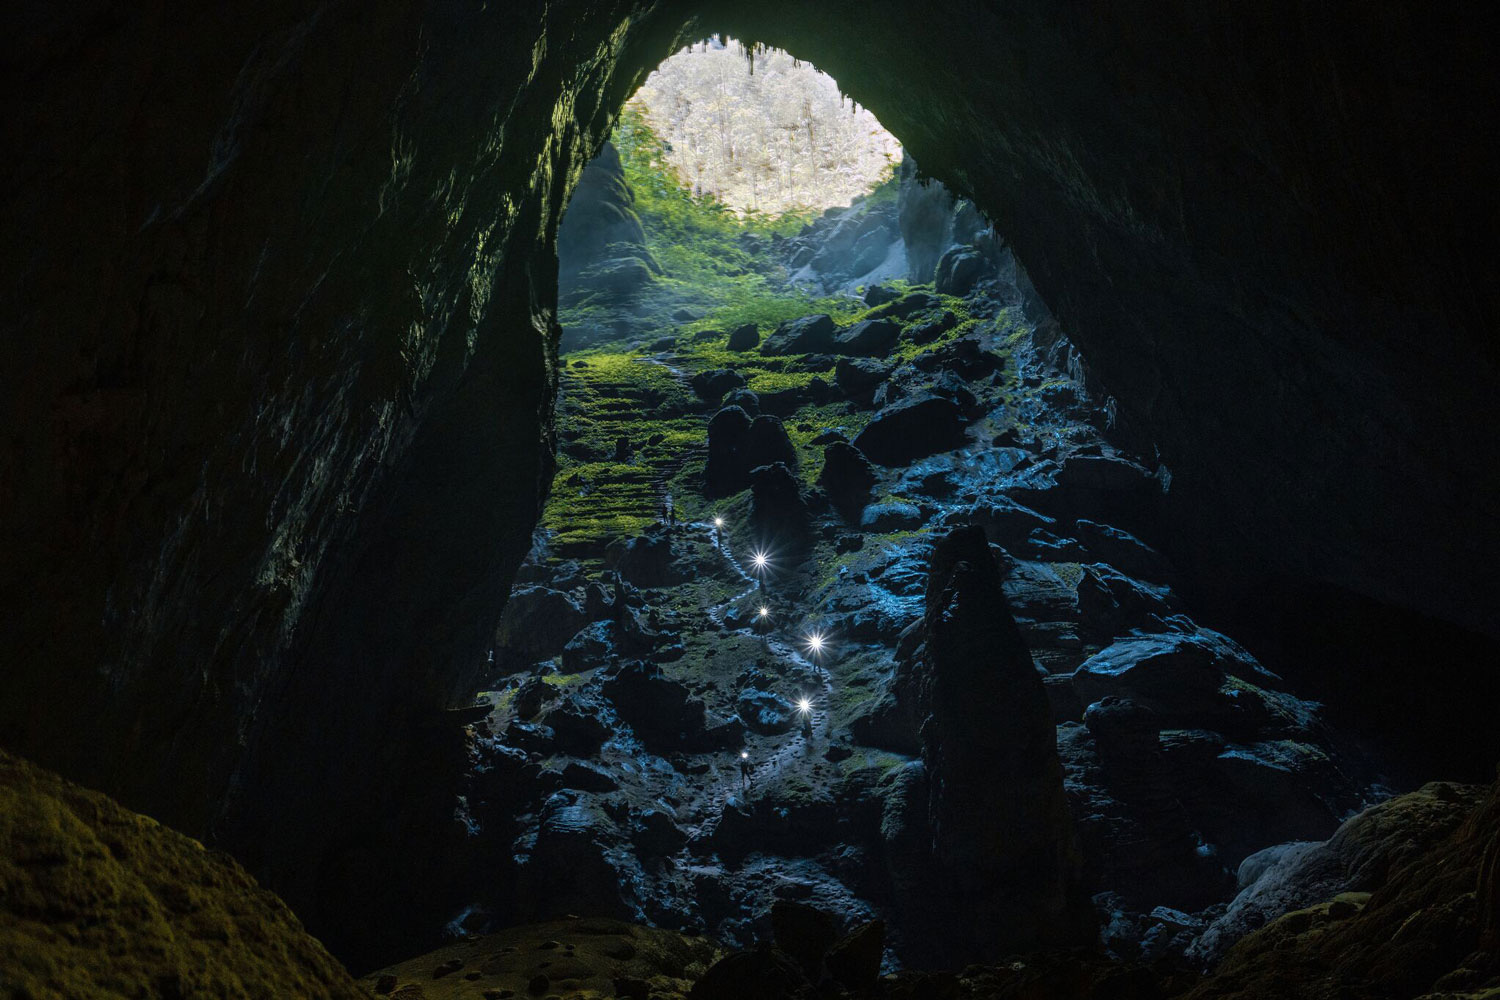 Hình ảnh Hồ Sứt 2 trong hang Sơn Đoòng